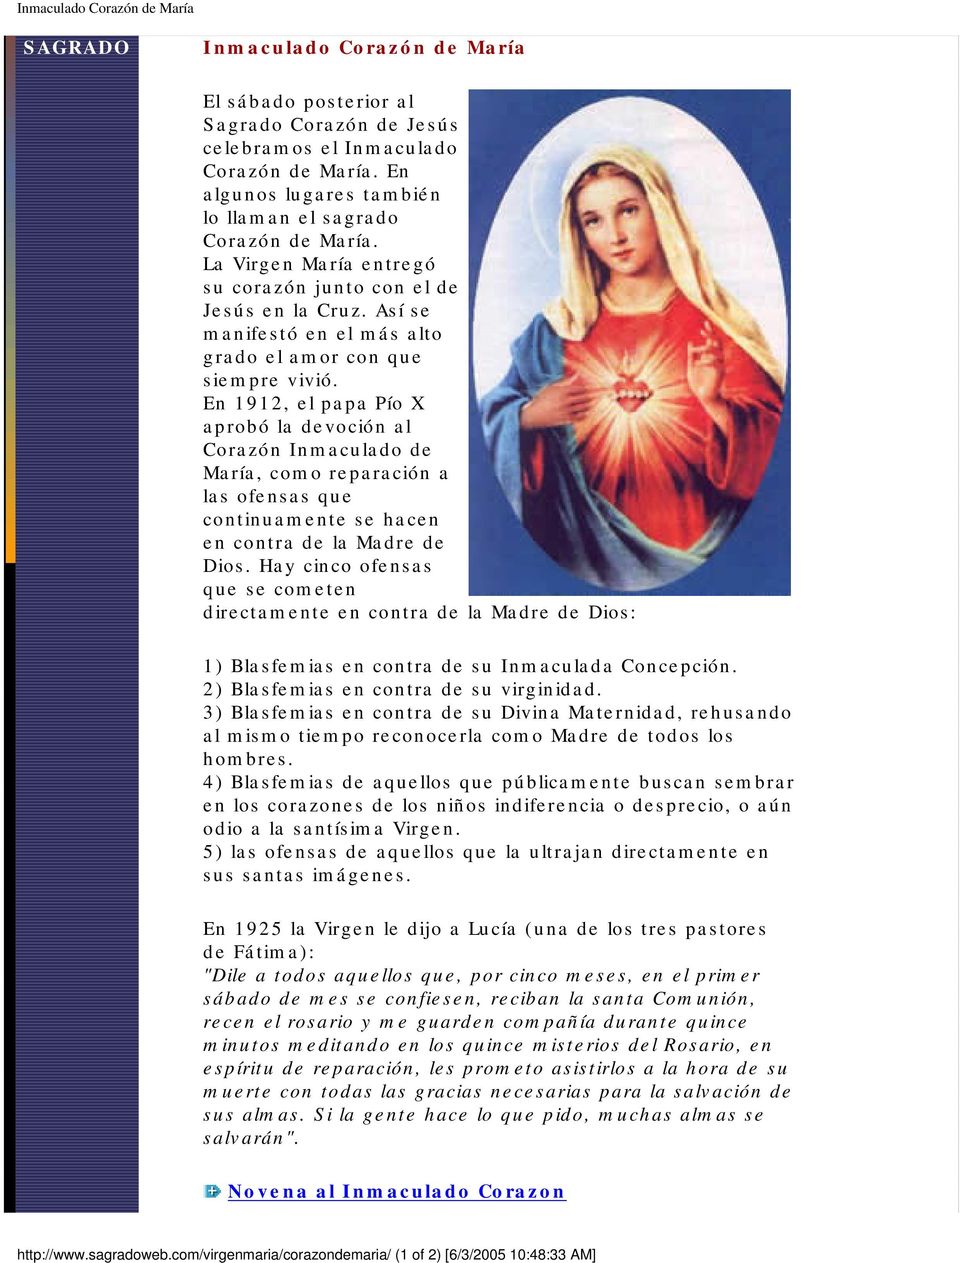 En 1912, el papa Pío X aprobó la devoción al Corazón Inmaculado de María, como reparación a las ofensas que continuamente se hacen en contra de la Madre de Dios.